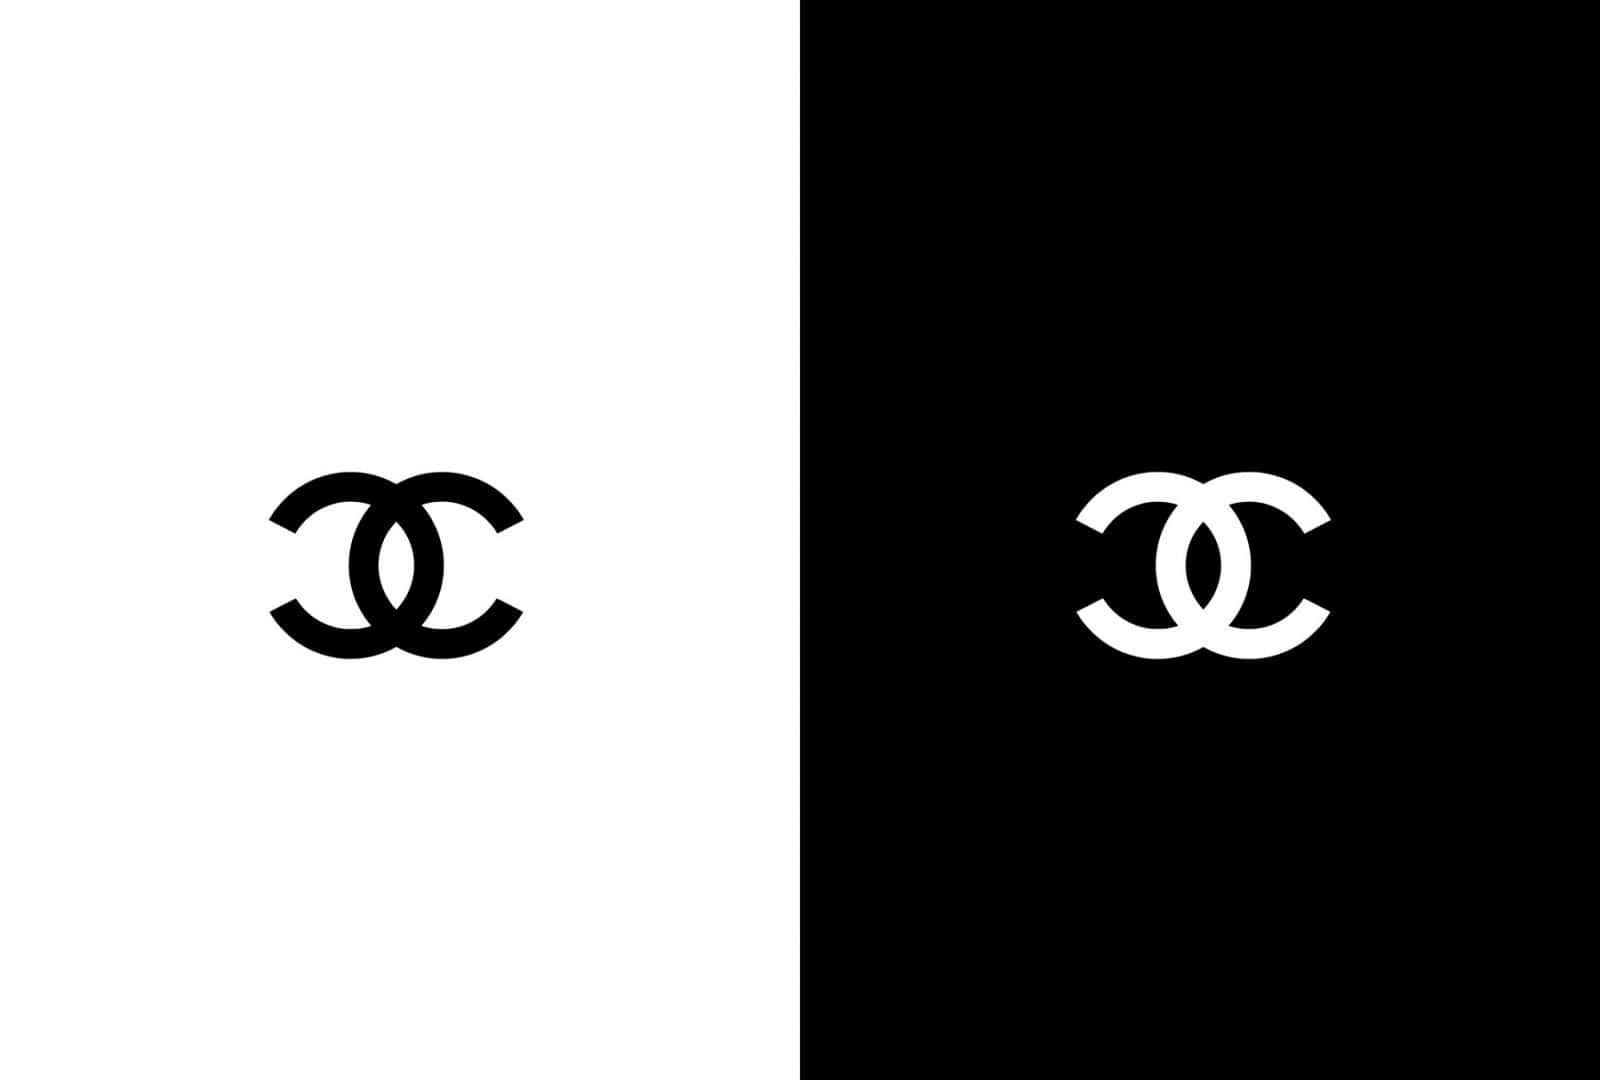 Daslogo Der Luxusmarke Chanel